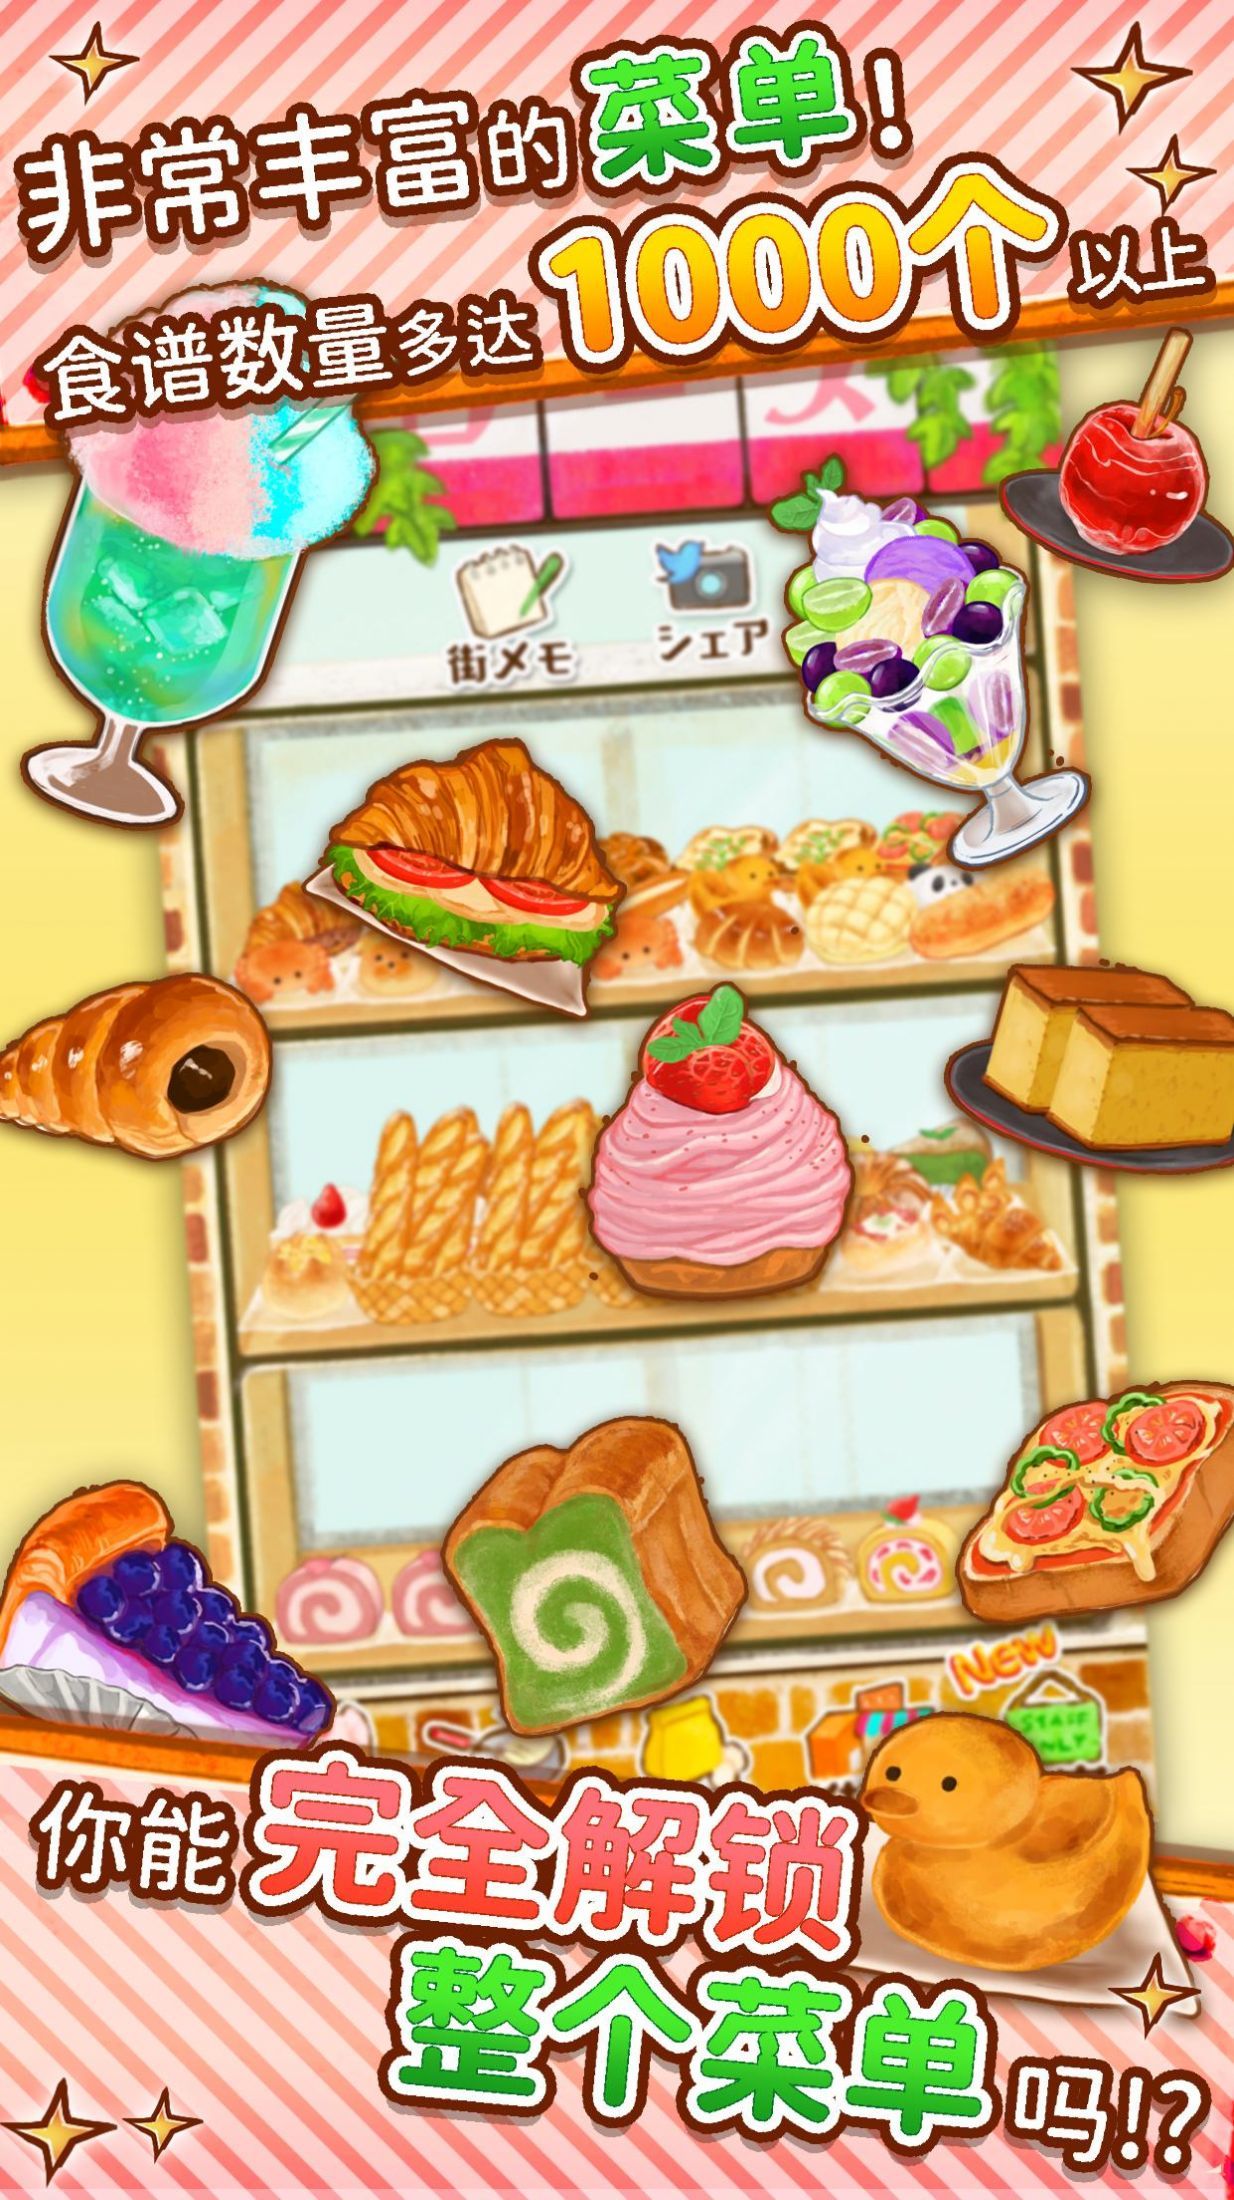 甜点玫瑰面包店中文版官网游戏下载v1.1.131截图